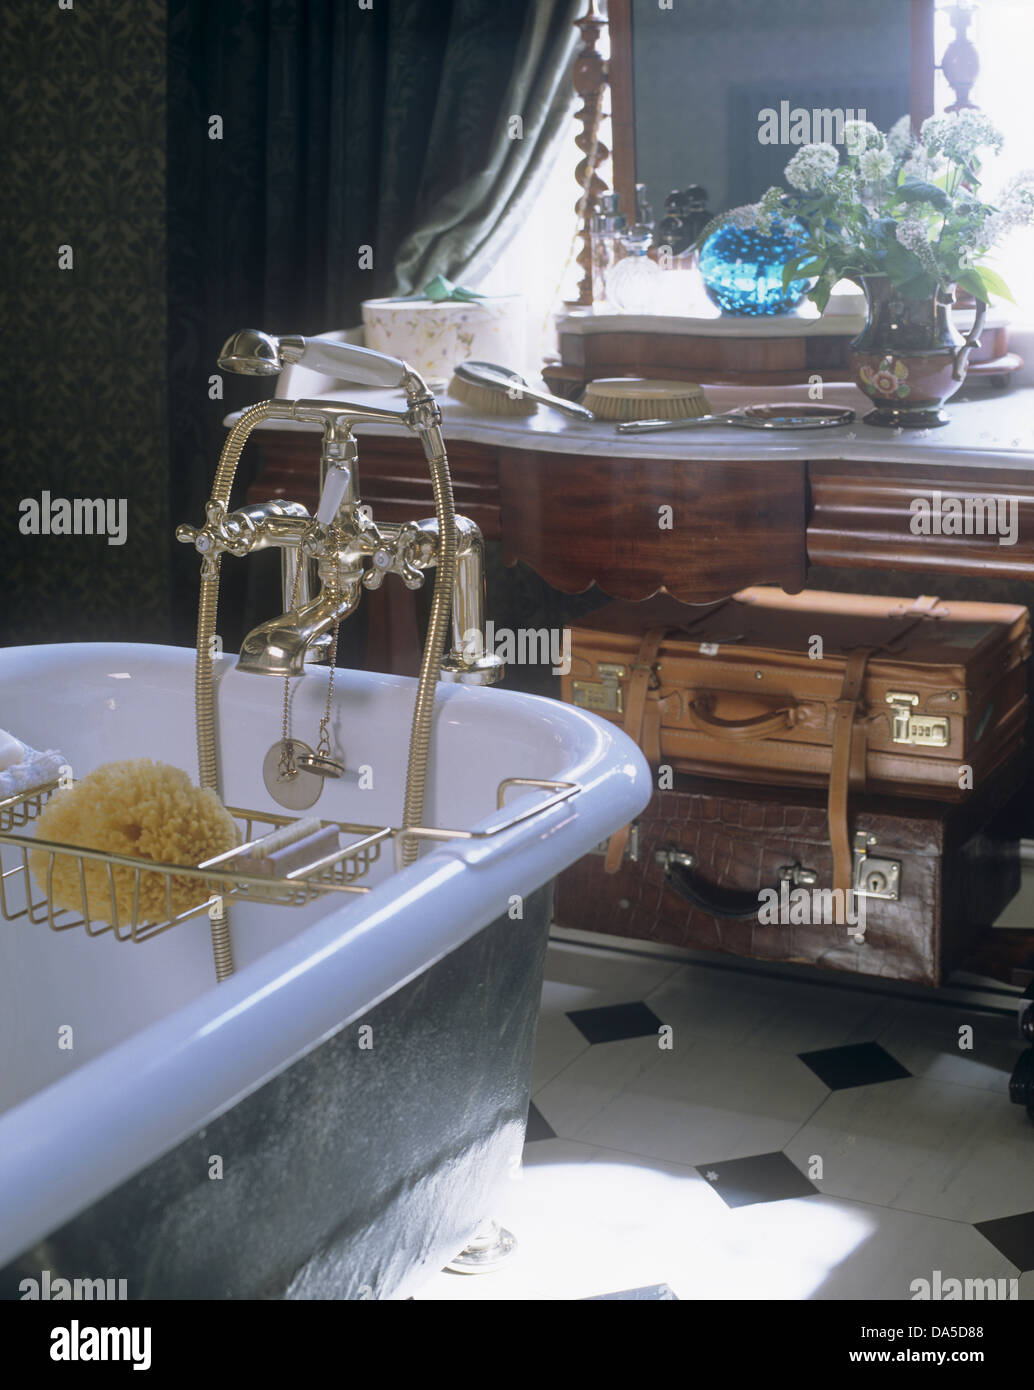 Roll-top vasca da bagno con doccia tocca il raccordo e il rack del bagno in bagno con vecchie valigie di cuoio sul tavolo della toeletta Foto Stock